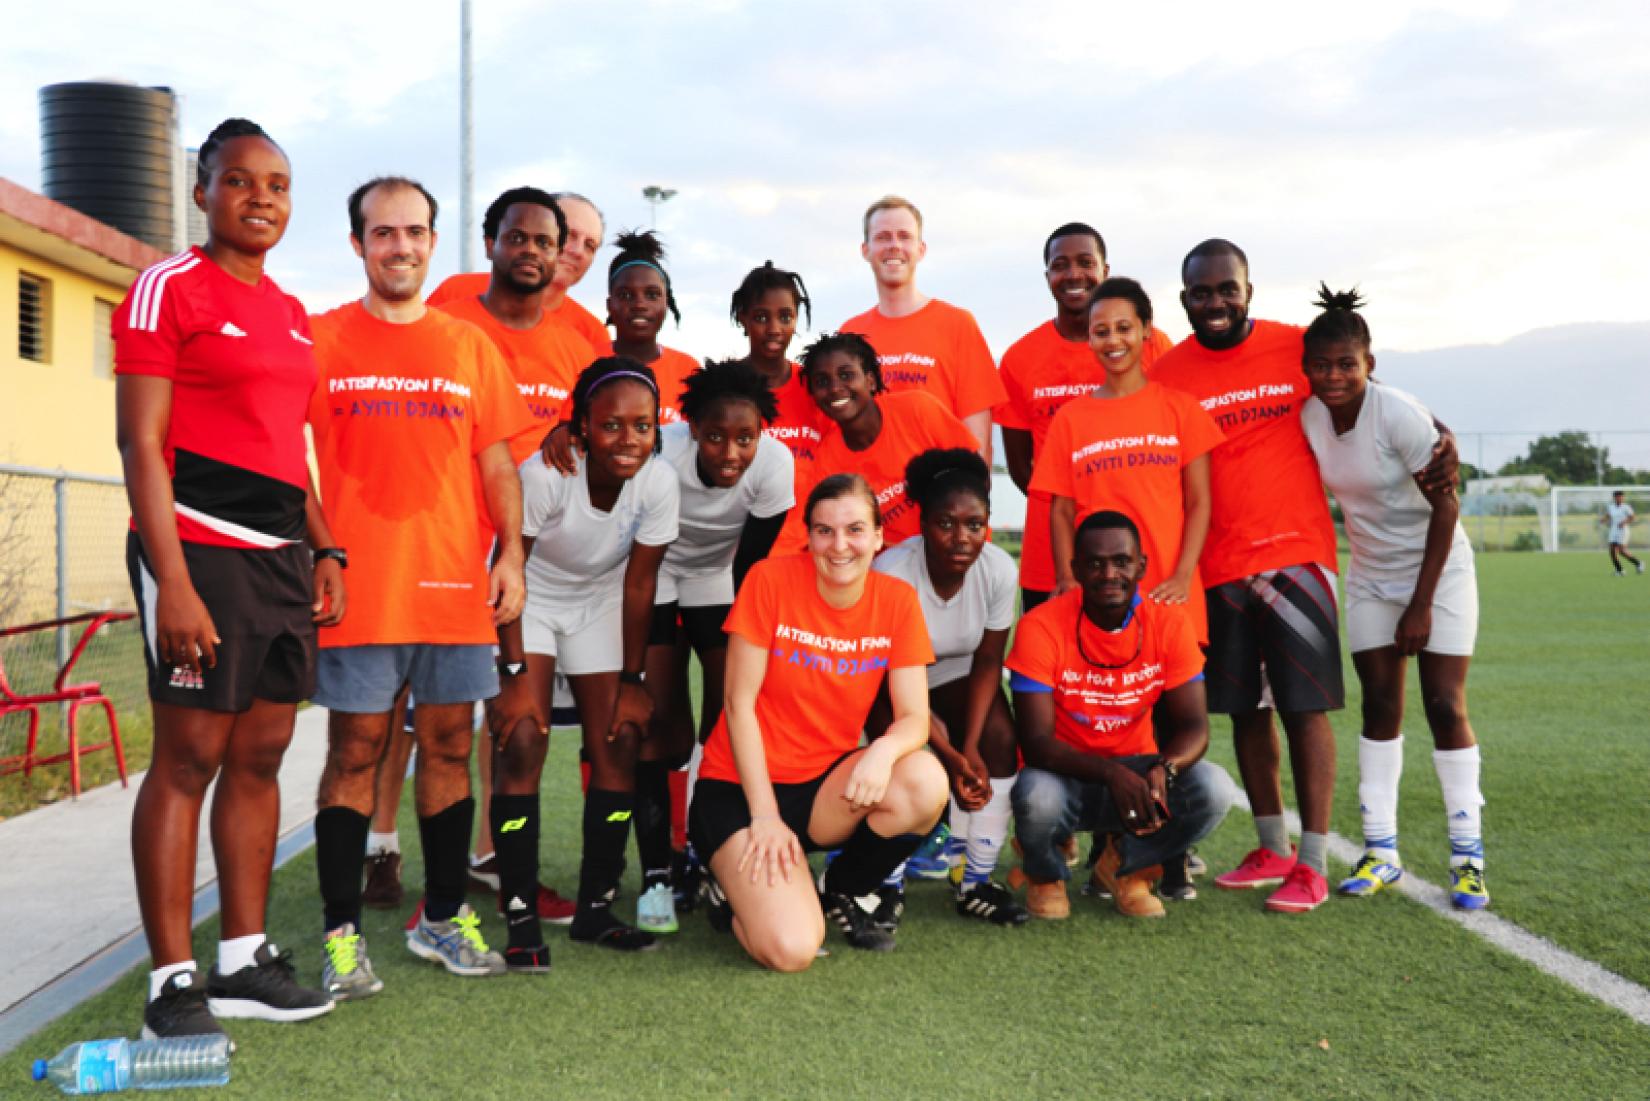 Football match contre la violence faite aux femmes en 2017, Haïti